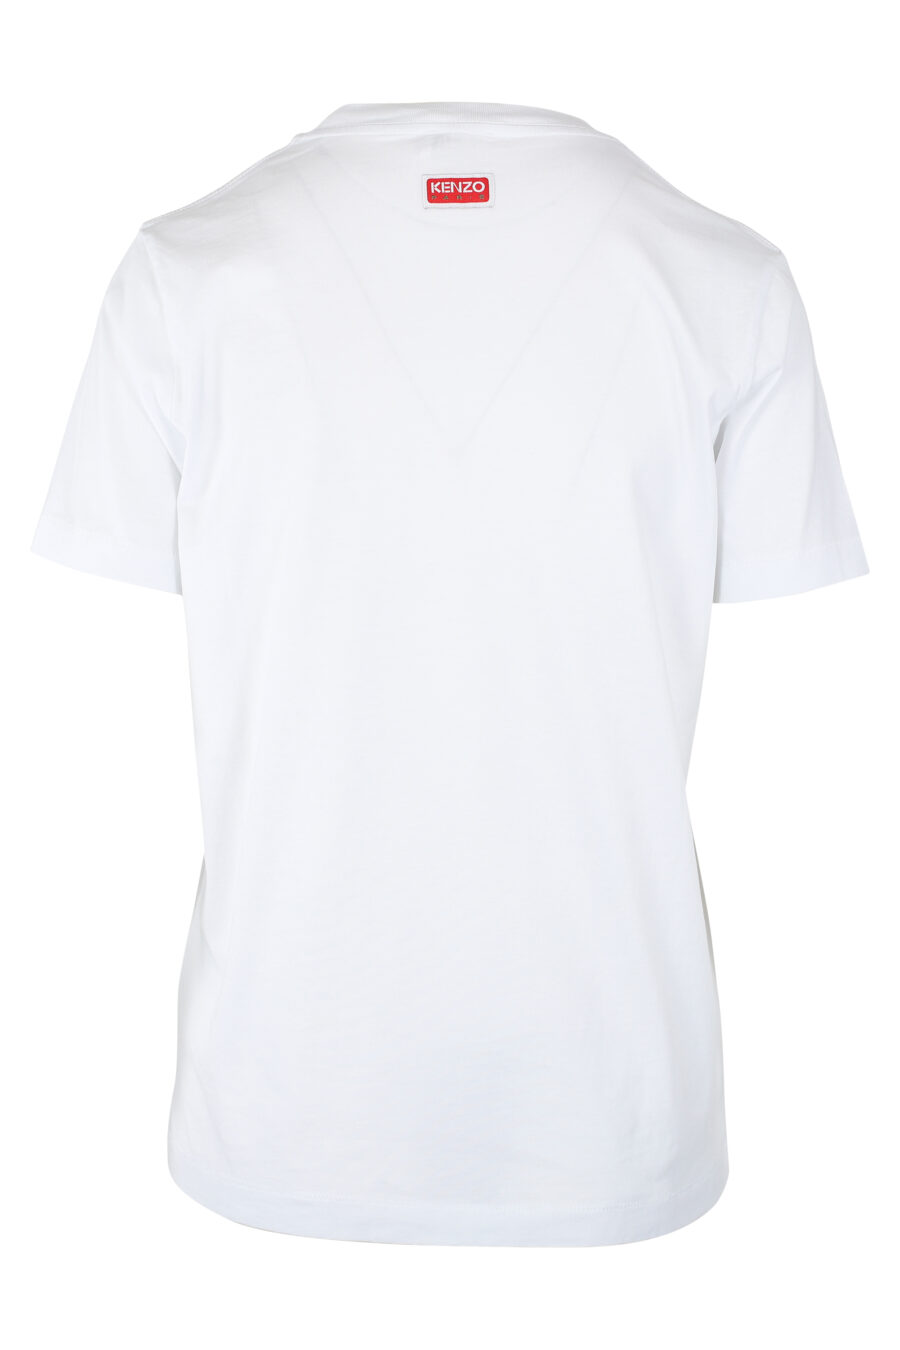 Camiseta blanca con maxilogo flor naranja - IMG 9529